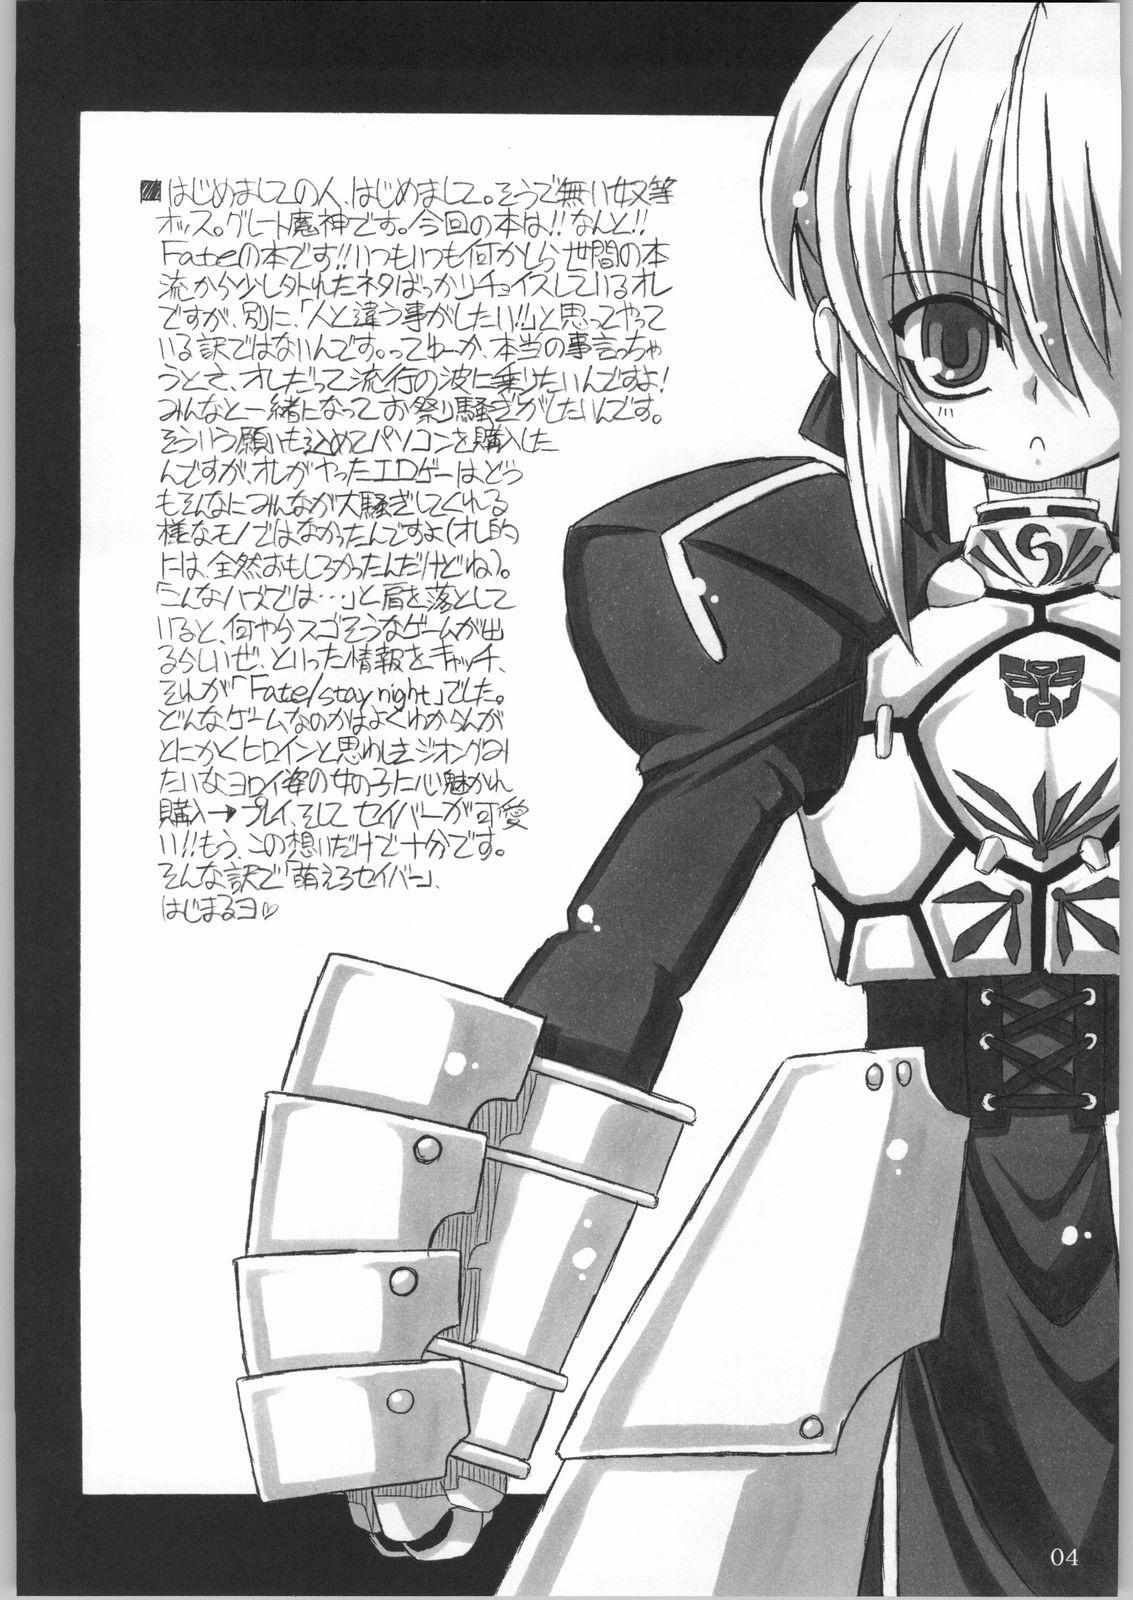 Good Entaku No Kishi Monogatari Moero Saber - Fate stay night Sucking Cocks - Page 3